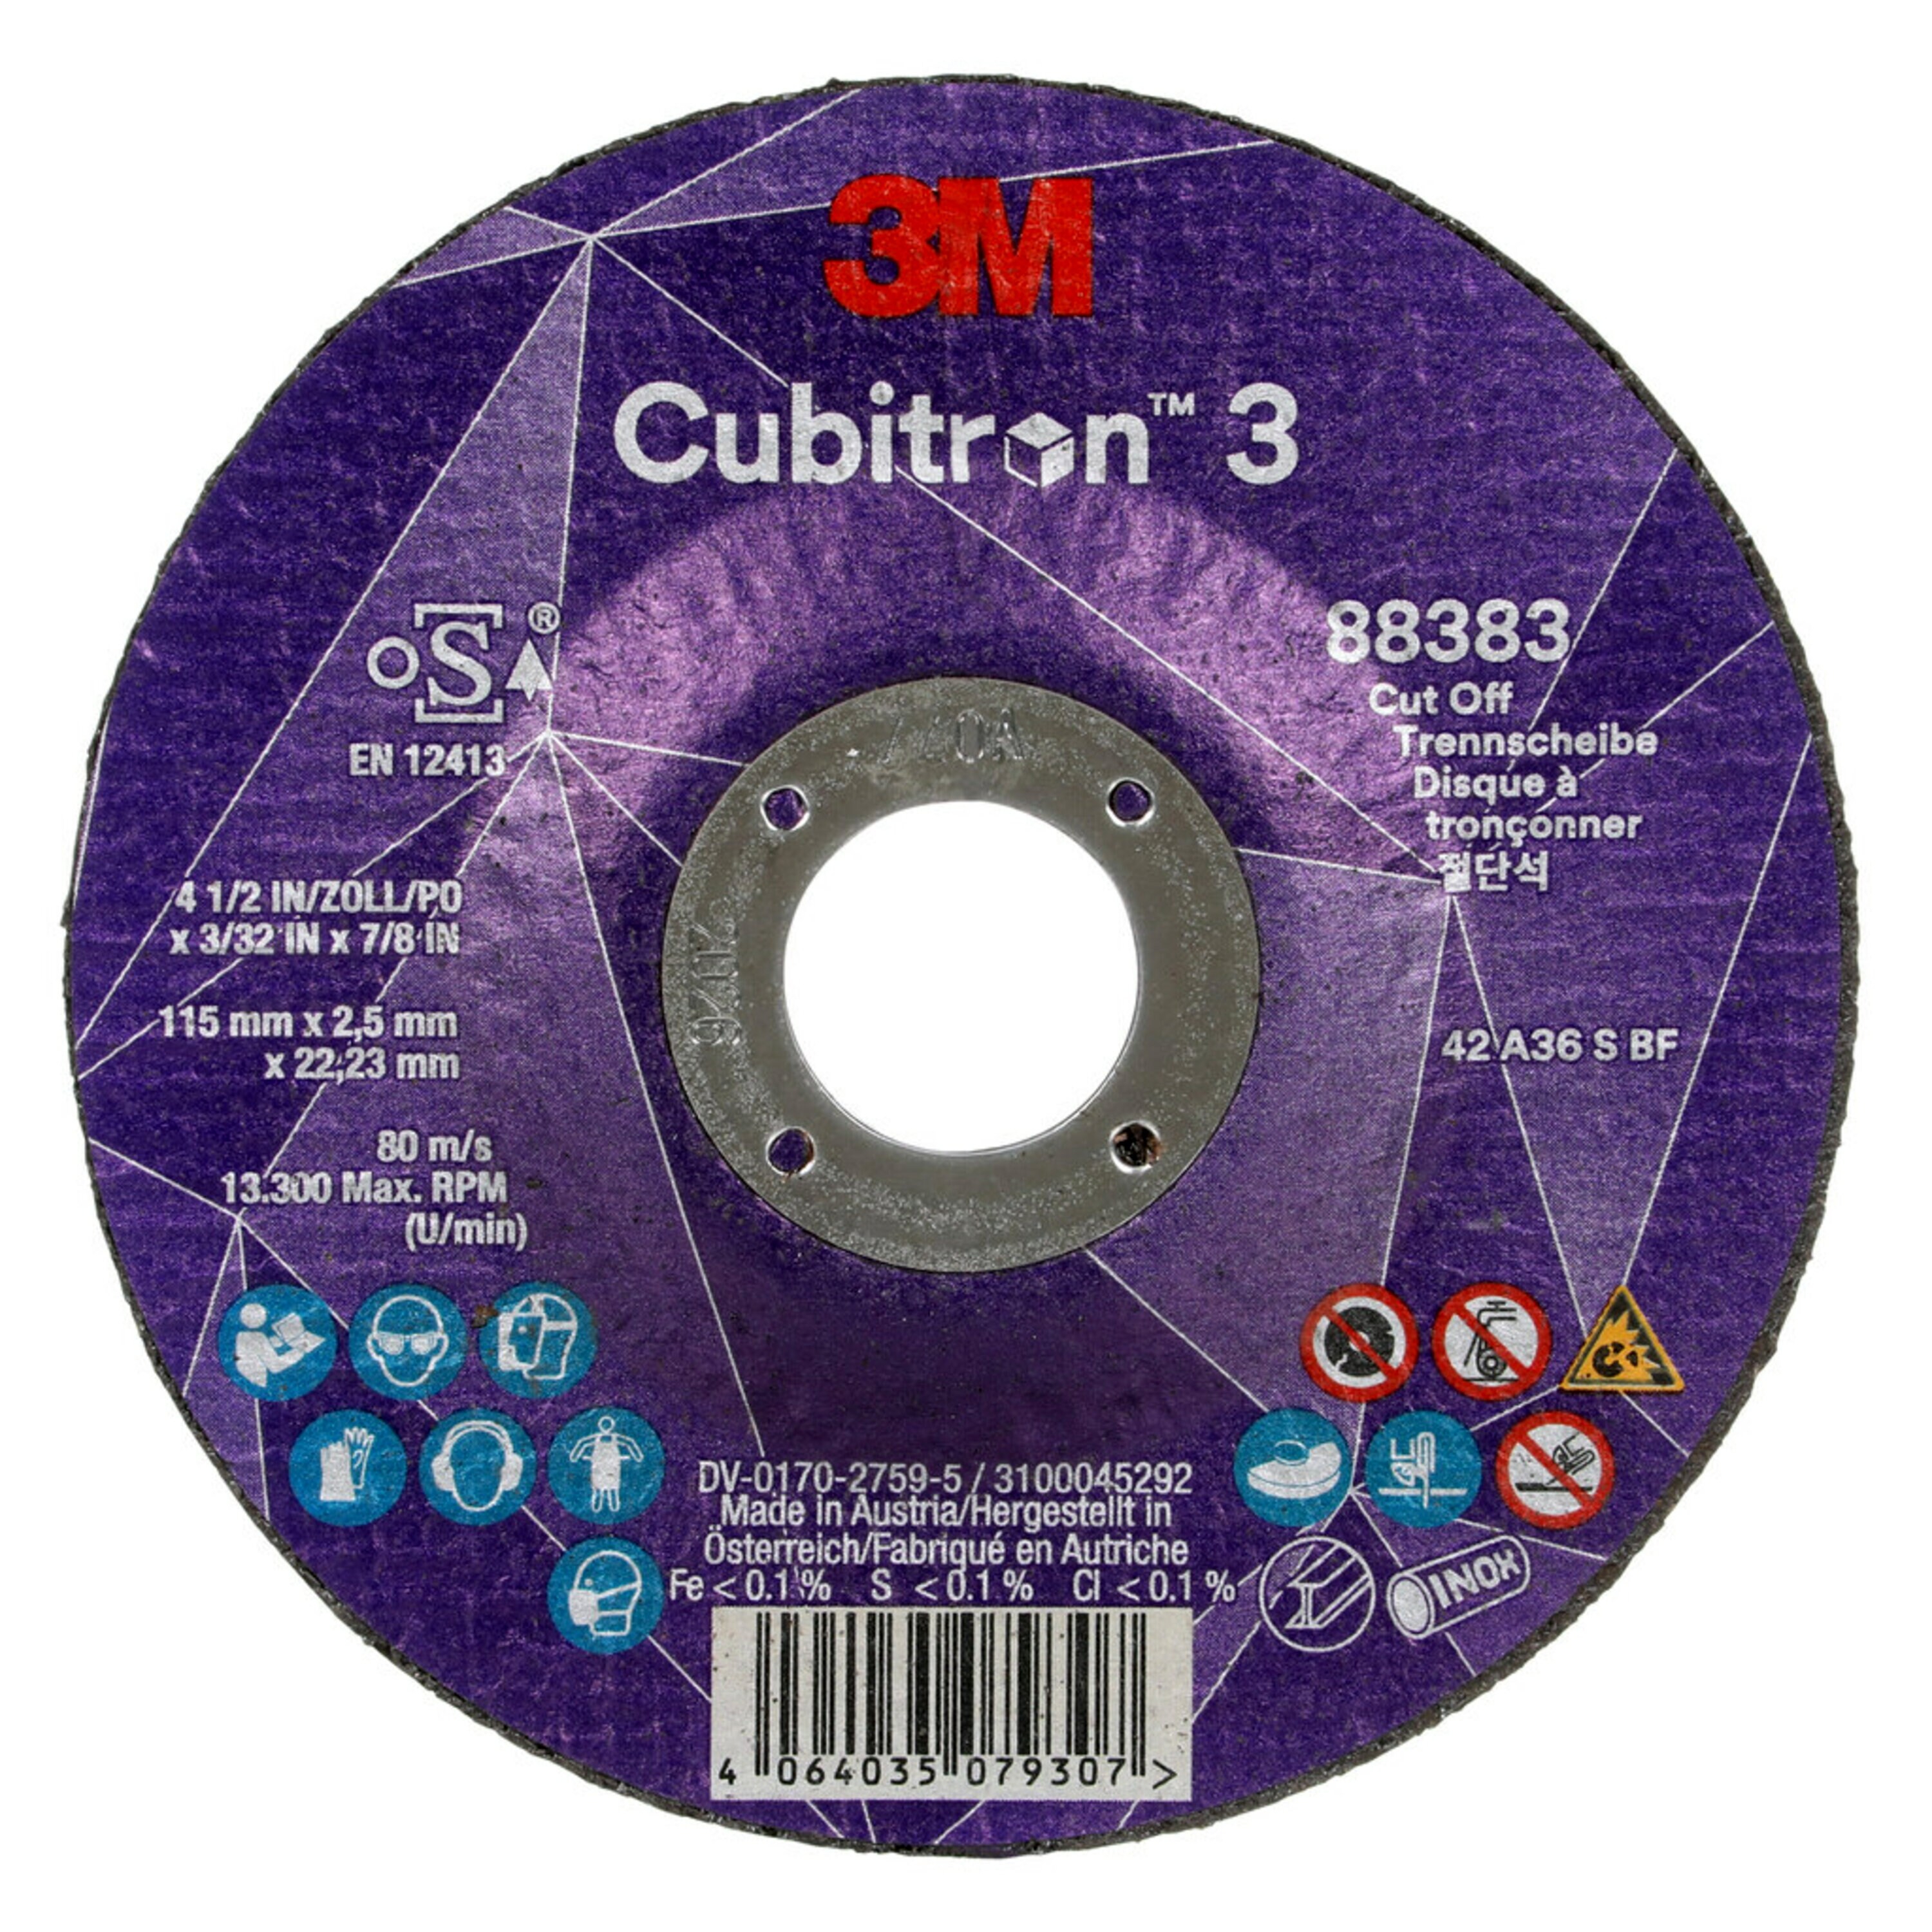 3M Cubitron 3 disco da taglio, 115 mm, 2,5 mm, 22,23 mm, 36 , tipo 42 #89573